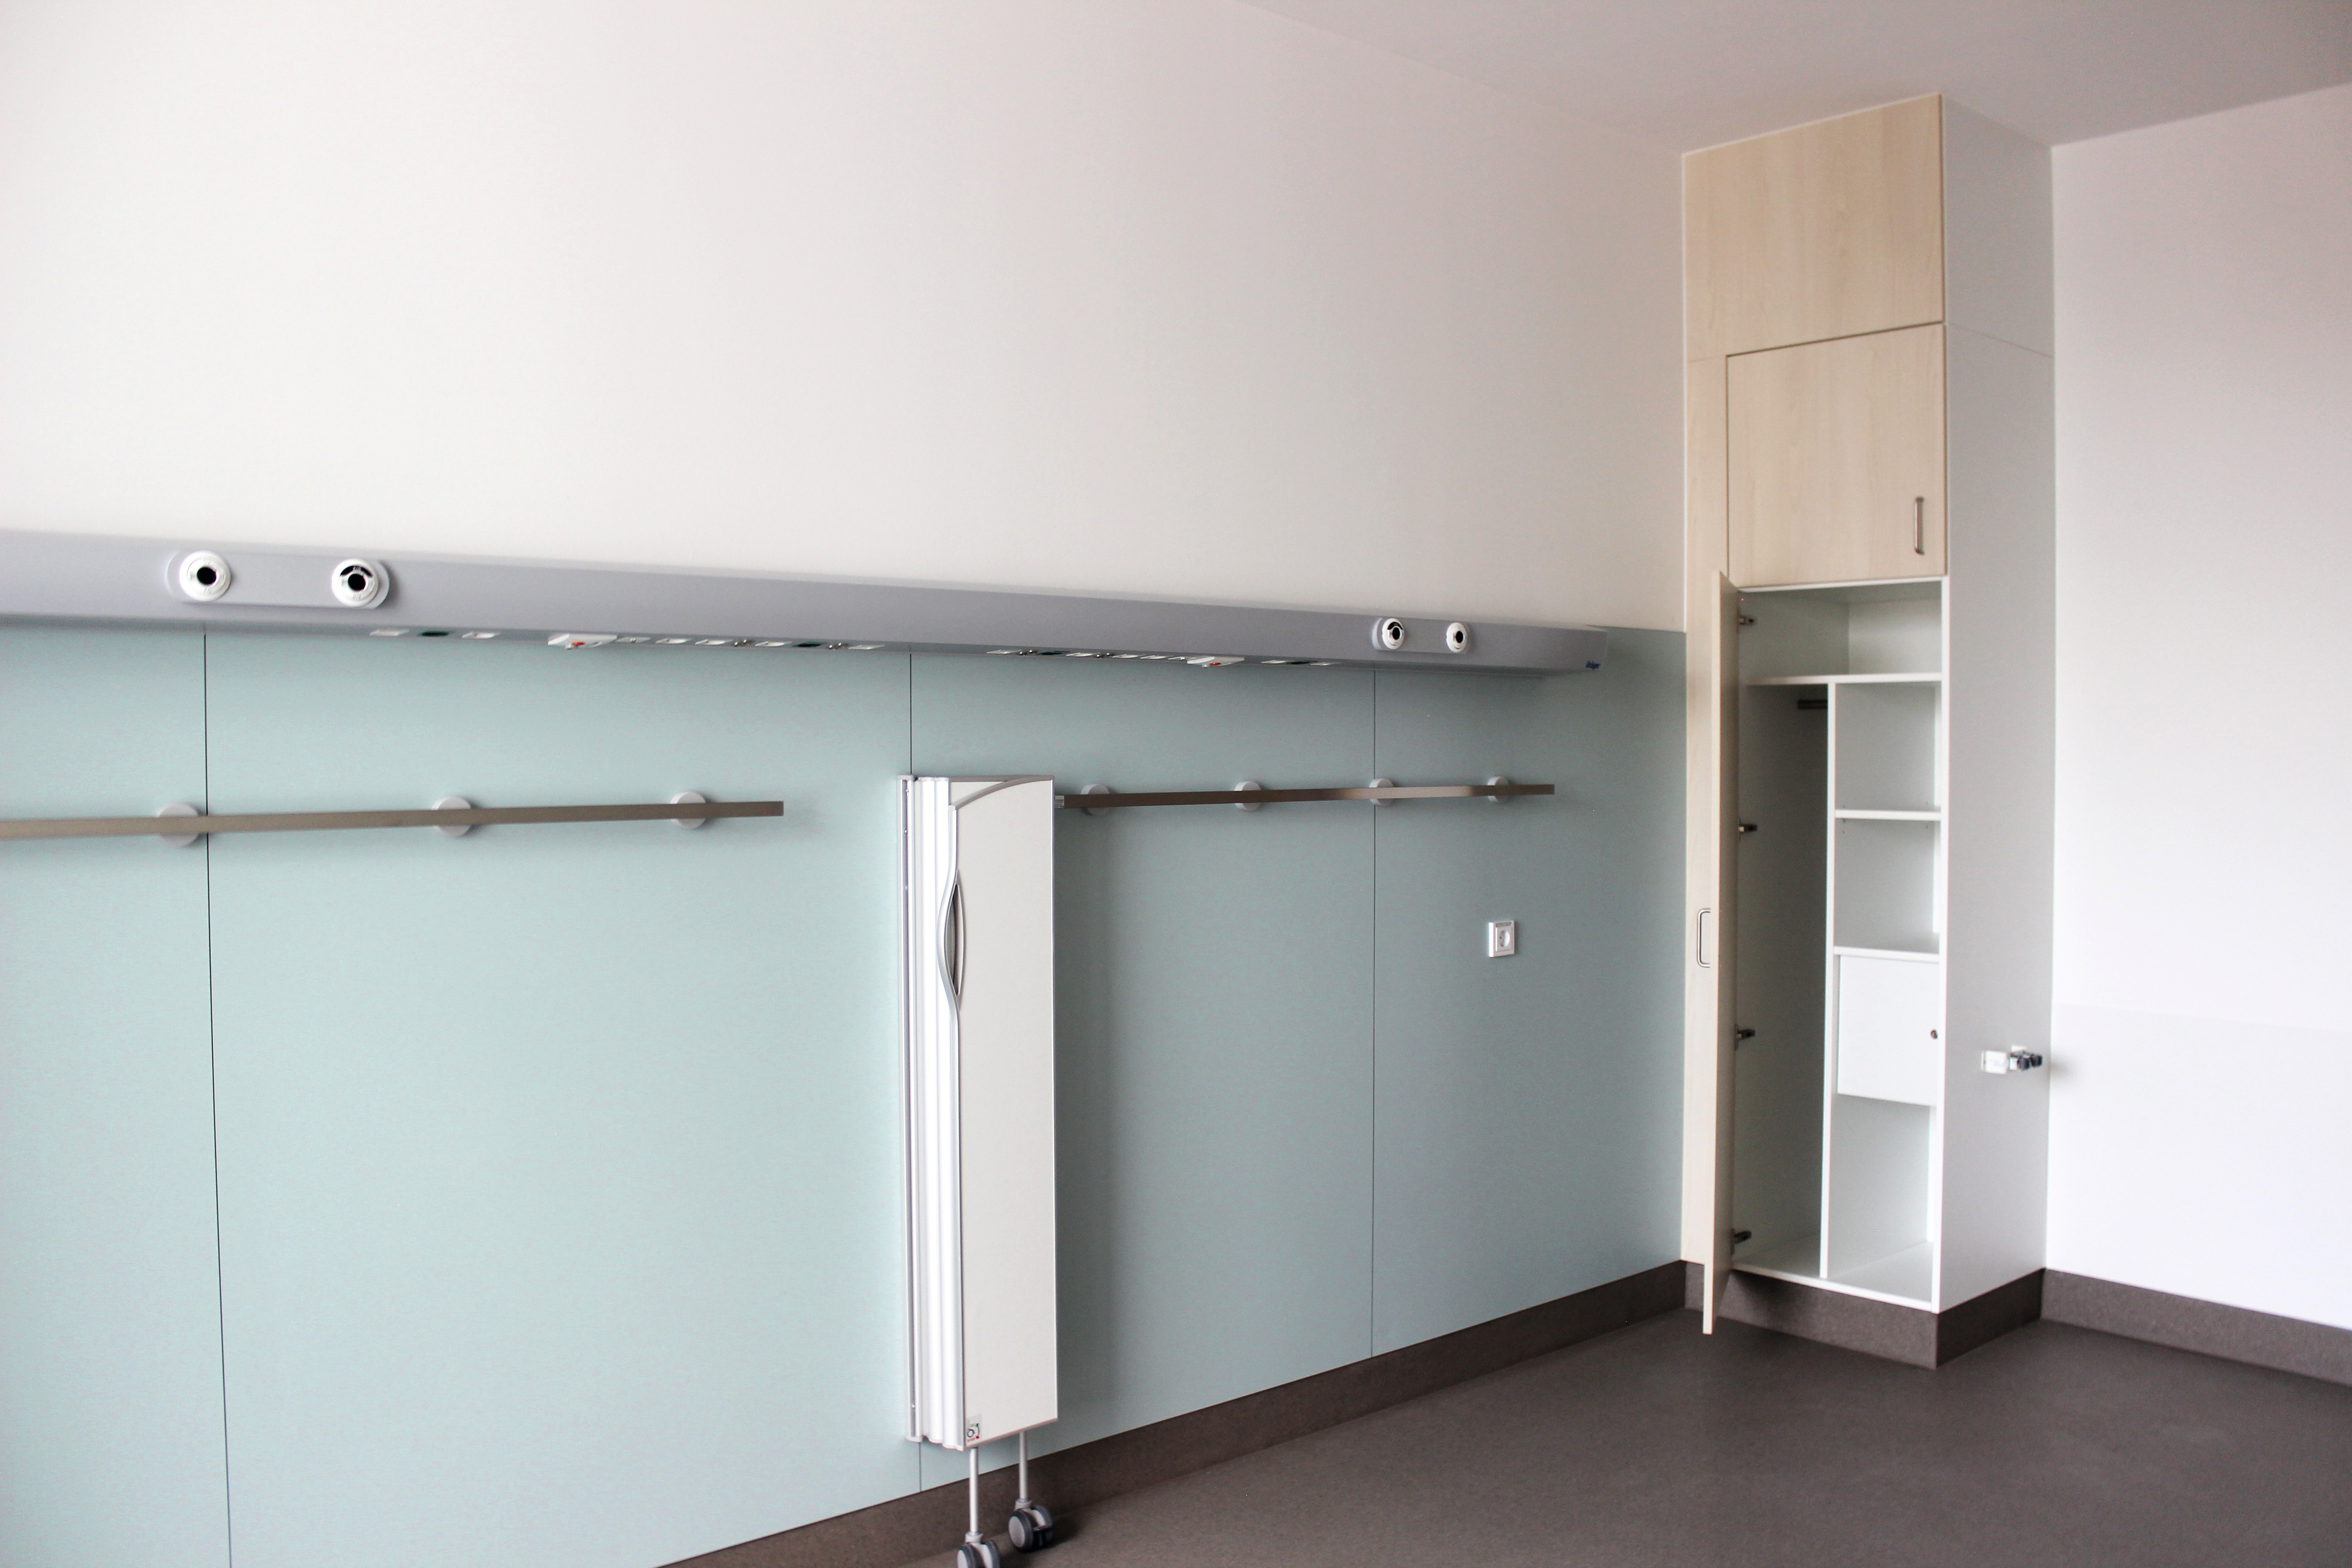 Cuerpos de los armarios de pacienteshechos de componentes para muebles con la moderna conexión Clic. © University Hospital Schleswig-Holstein